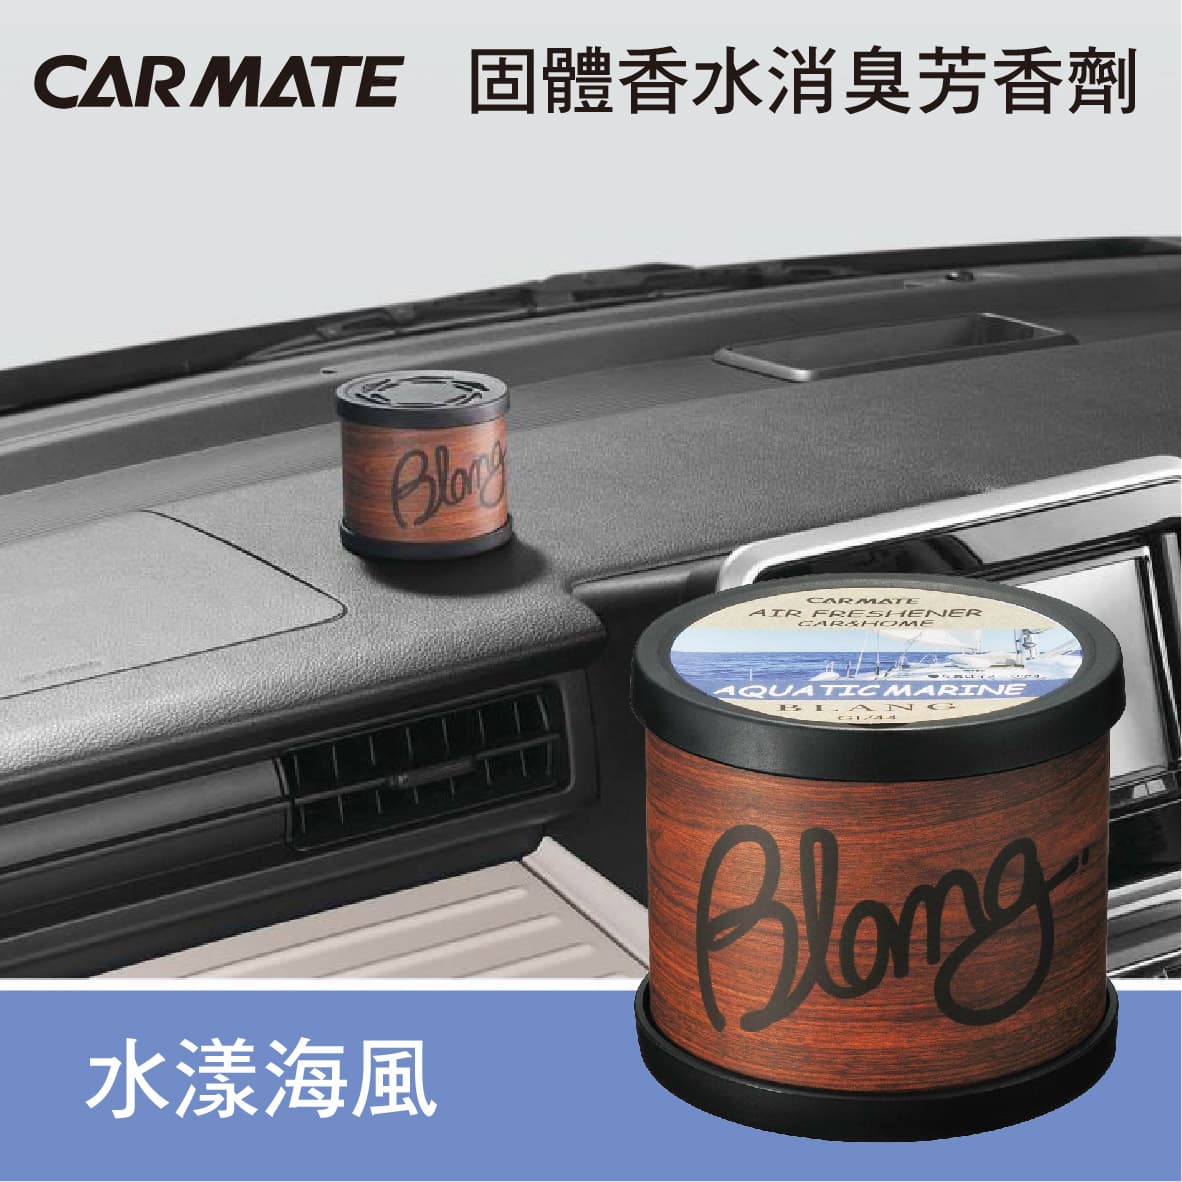 Carmate G1744 Blang固體香水消臭芳香劑 水漾海風80g